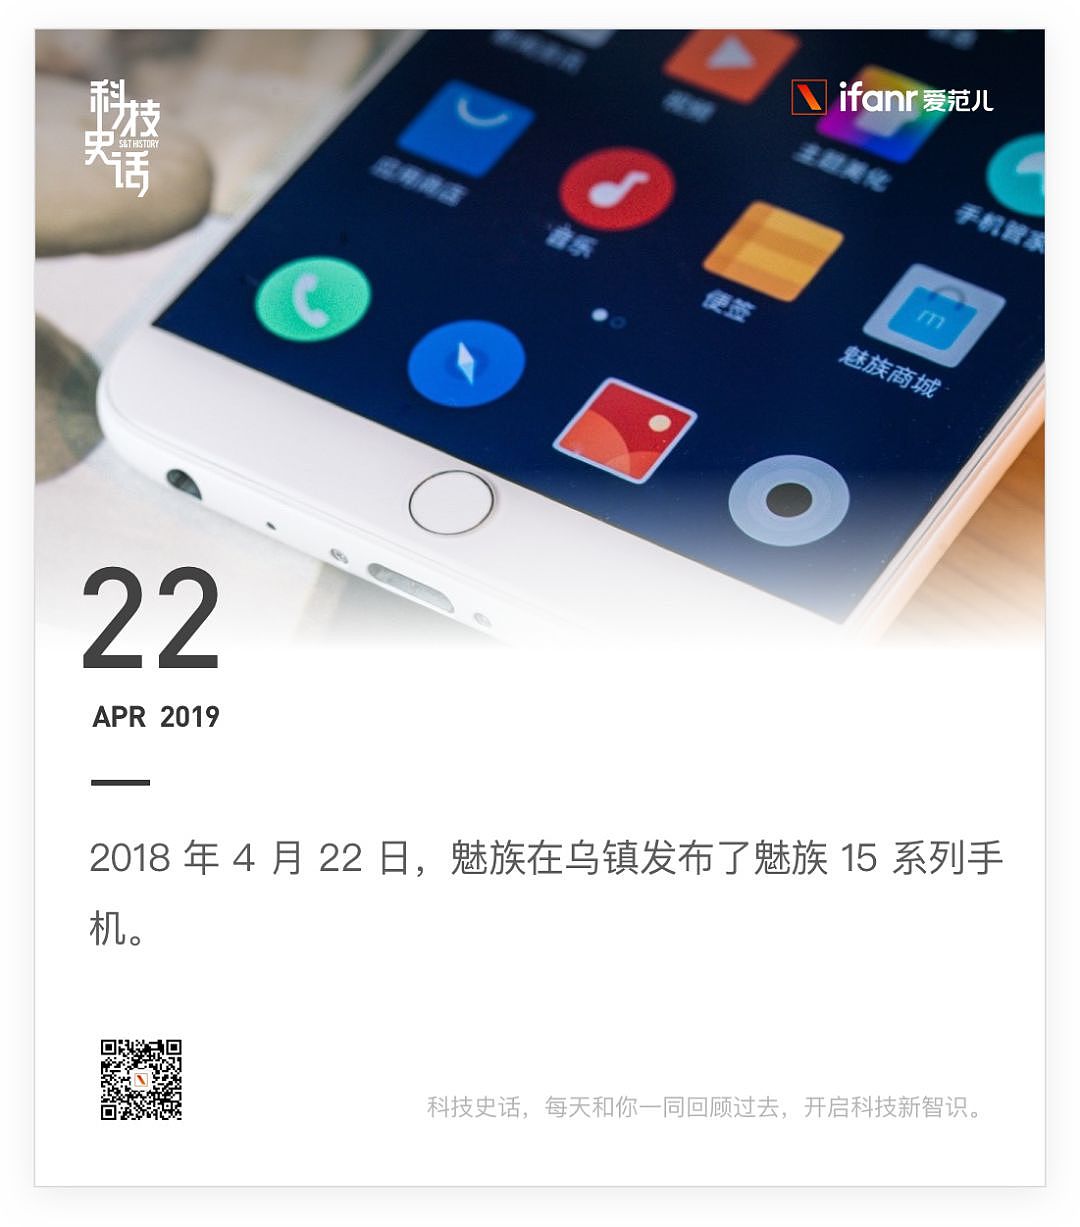 三星折叠屏手机中国发布会取消 /《复联 4》预售破 5 亿 / 星巴克将从沪深停供塑料吸管 - 29